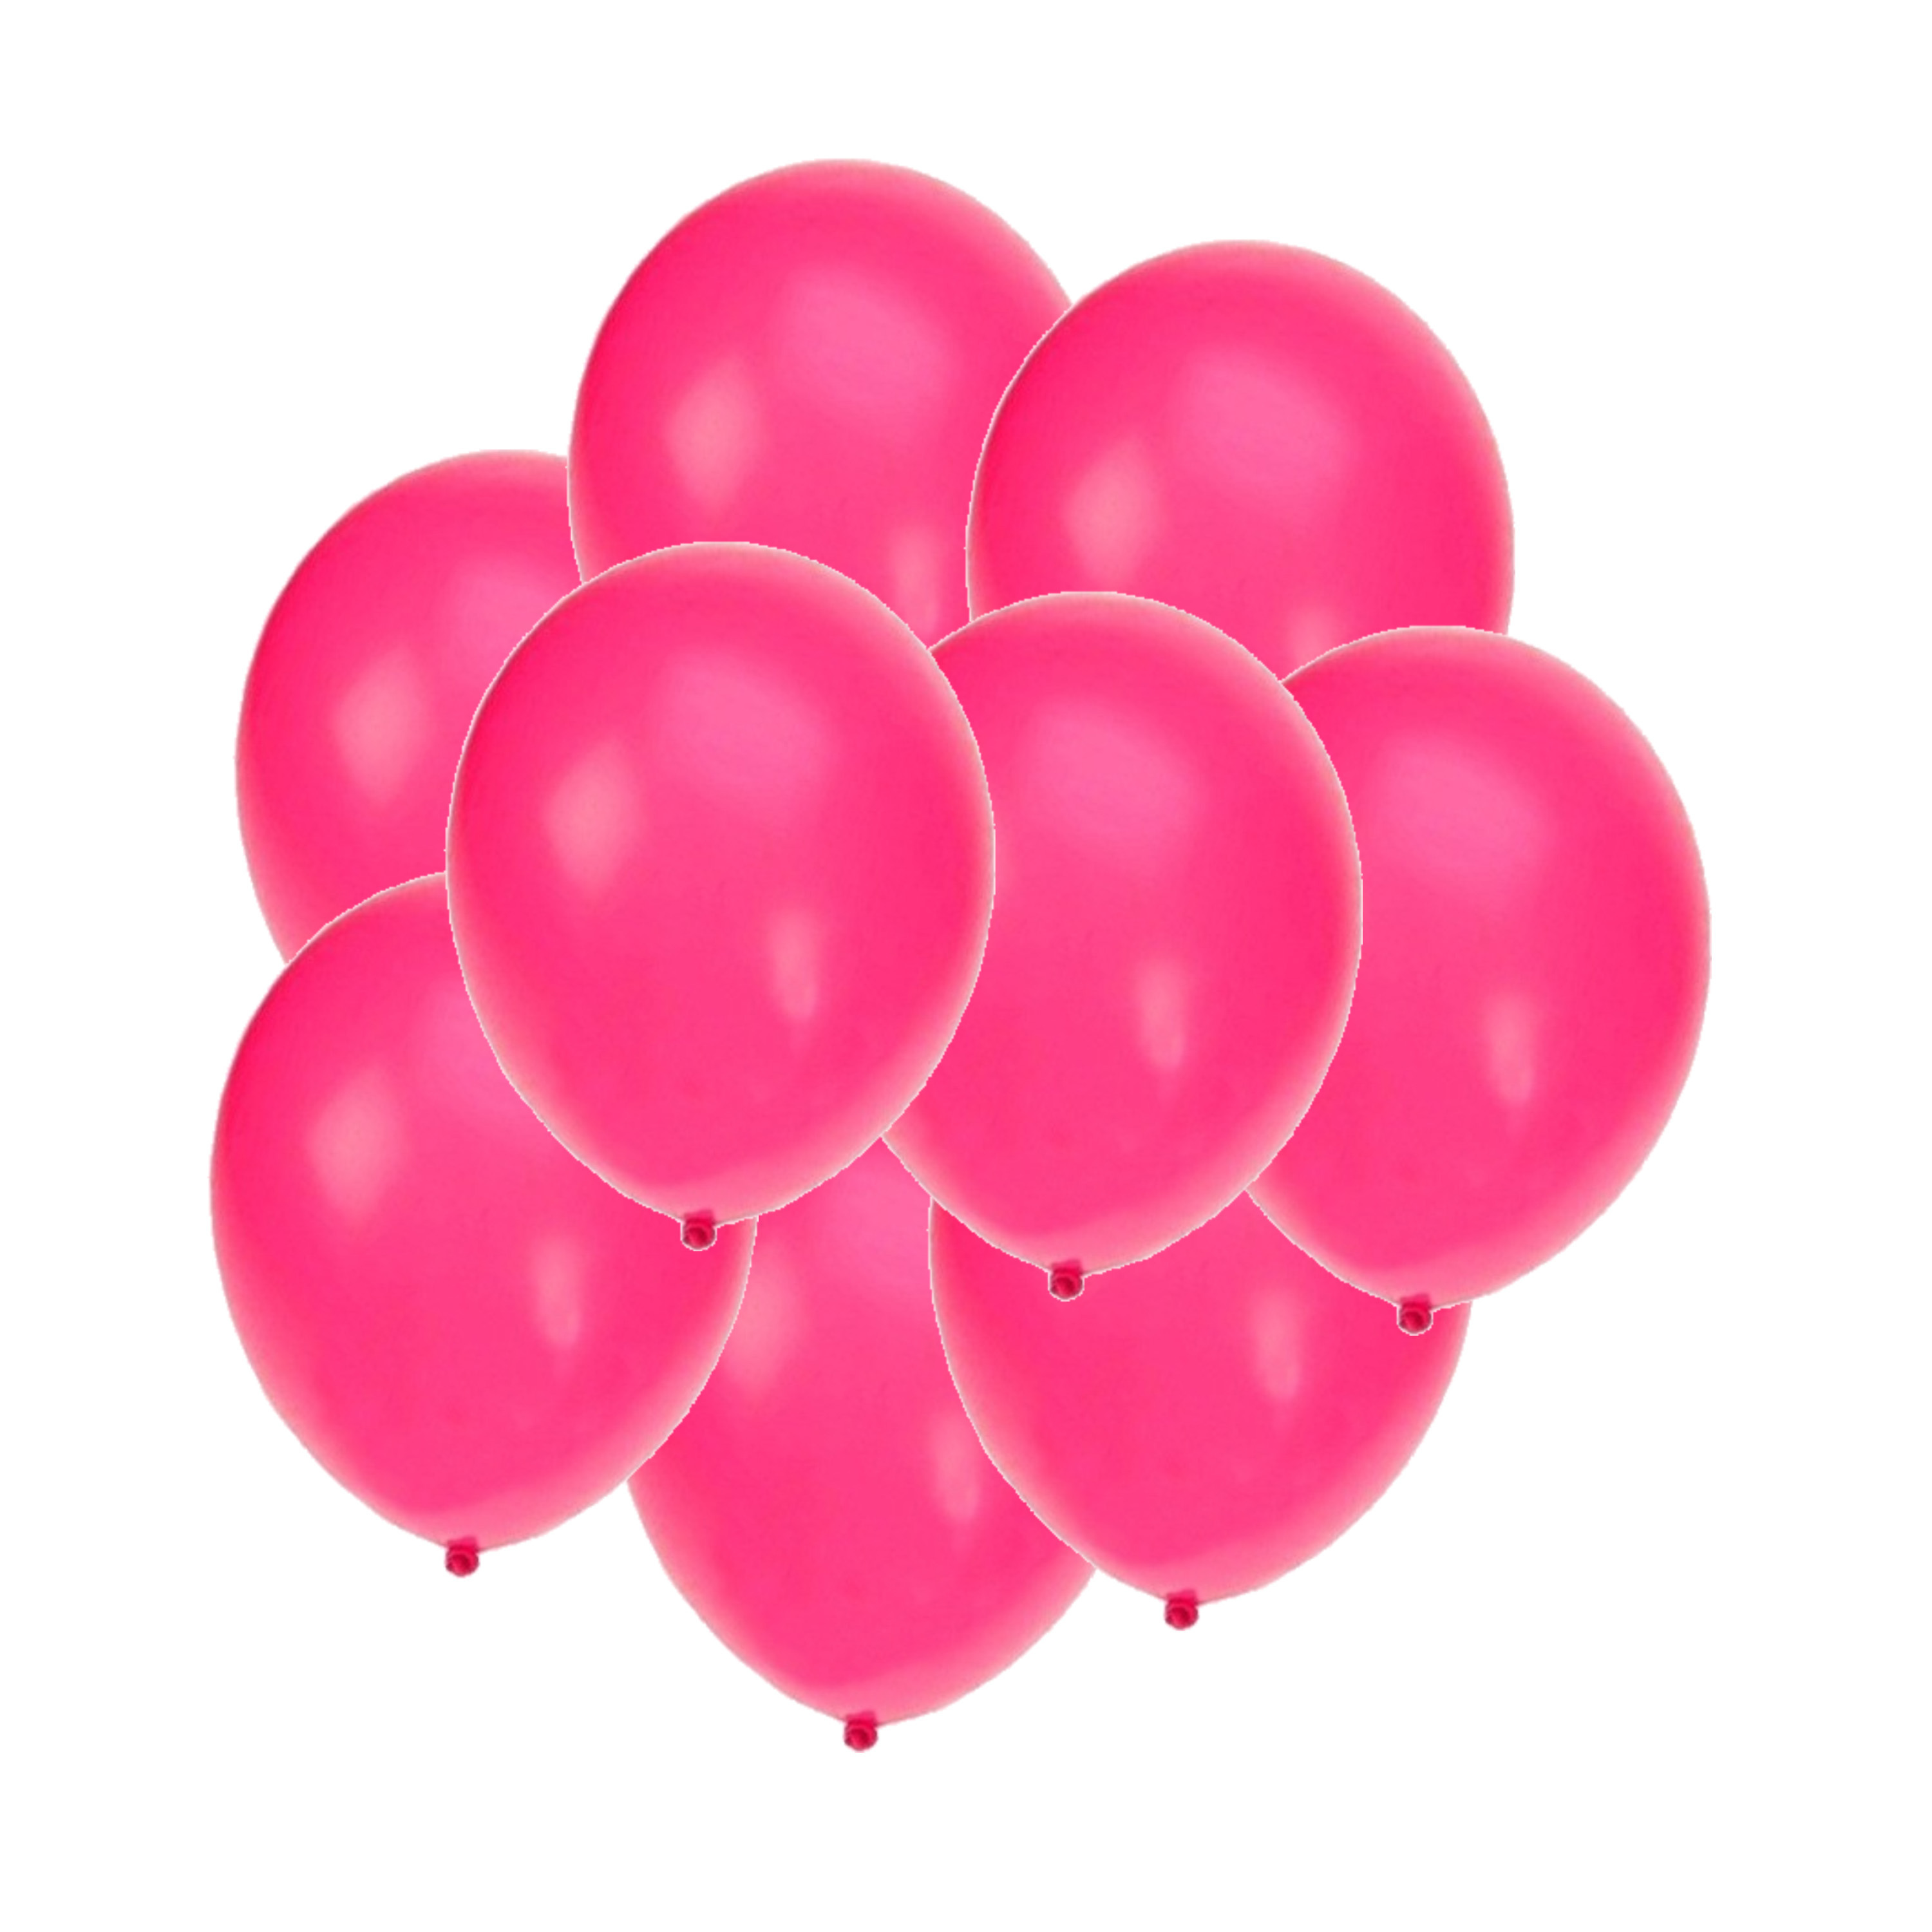 Bellatio decorations - Ballonnen knalroze/felroze 25x stuks rond 27 cm Top Merken Winkel